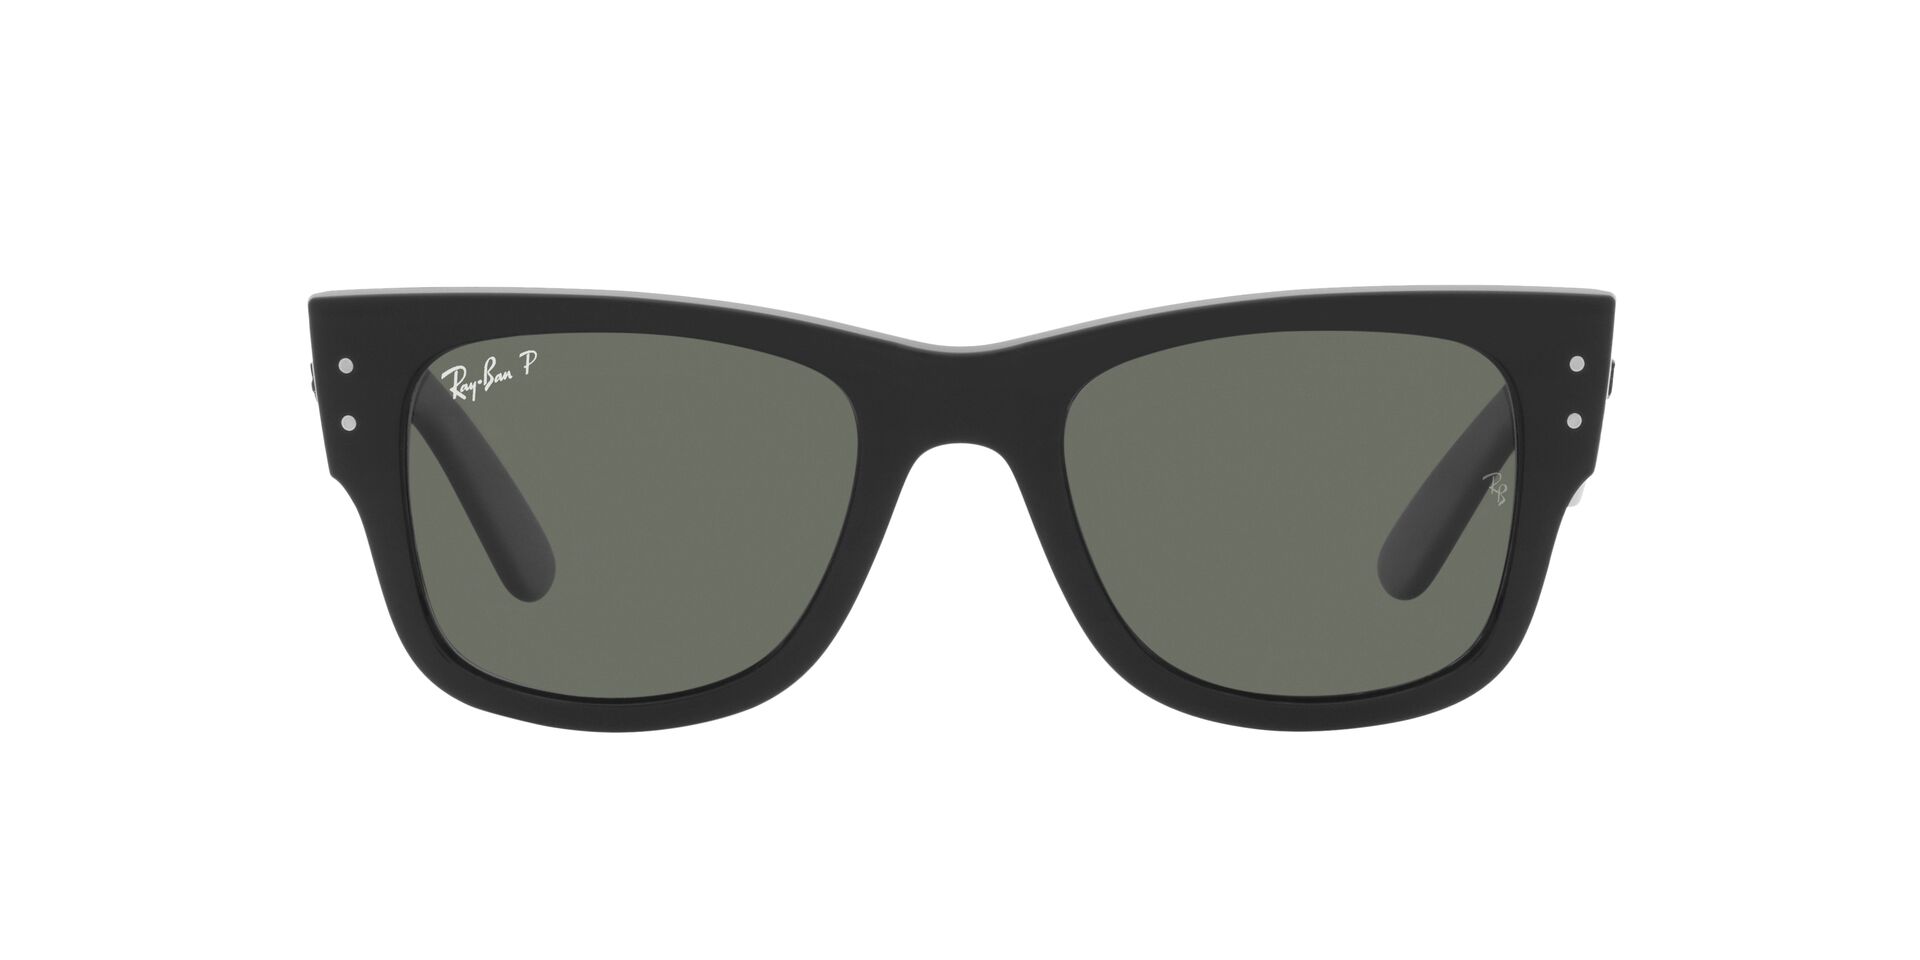 Buy PIRASO Aviator Sunglasses Green For Men & Women Online @ Best Prices in  India | Flipkart.com